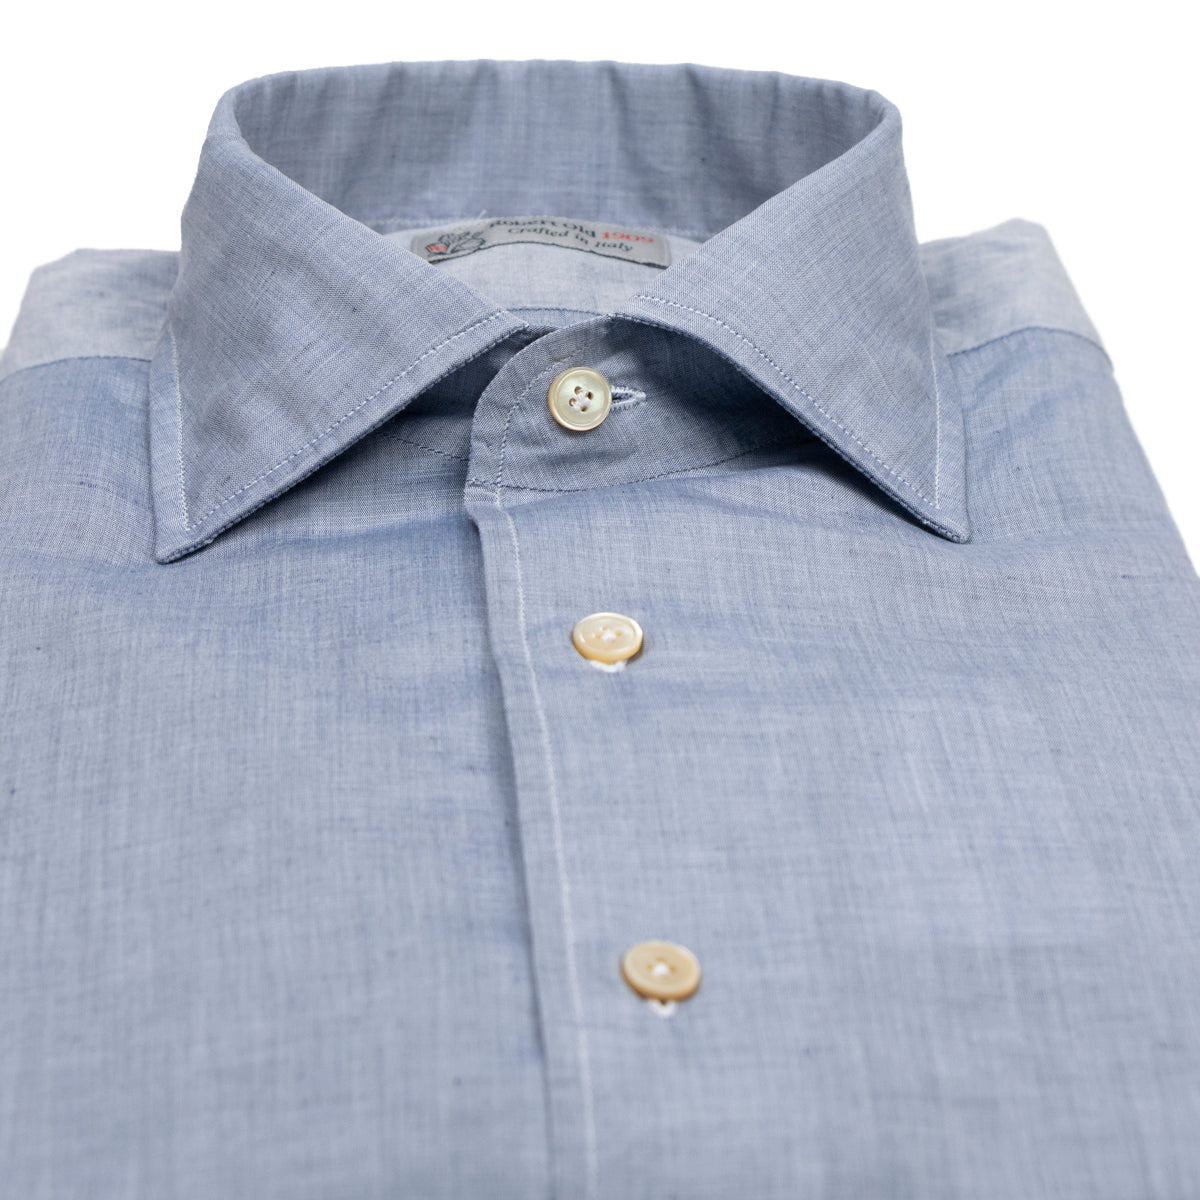 Steel Blue Cotton & Linen Long Sleeve Shirt  Robert Old   